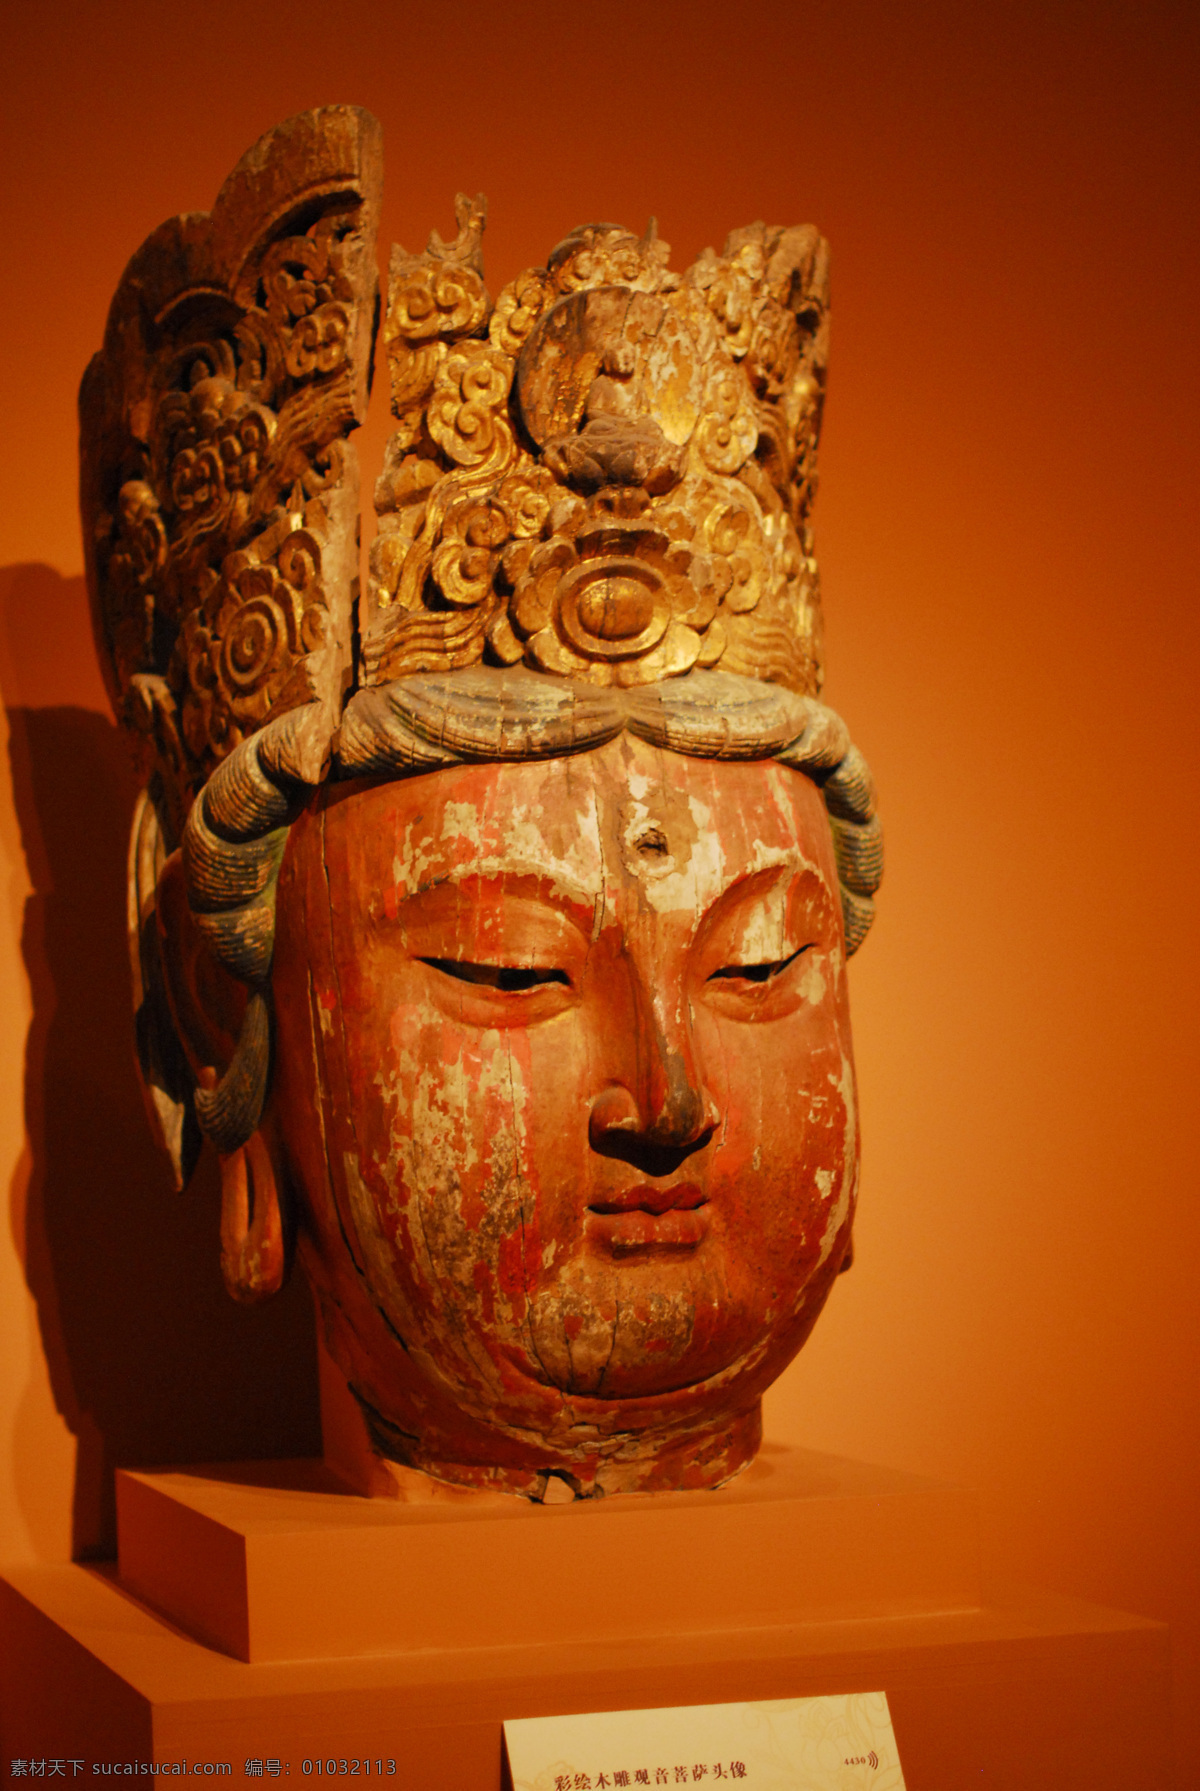 菩萨像 佛像 神像 天王 天神 雕像 石像 铜像 国宝 博物馆 收藏 珍宝 传统文化 文化艺术